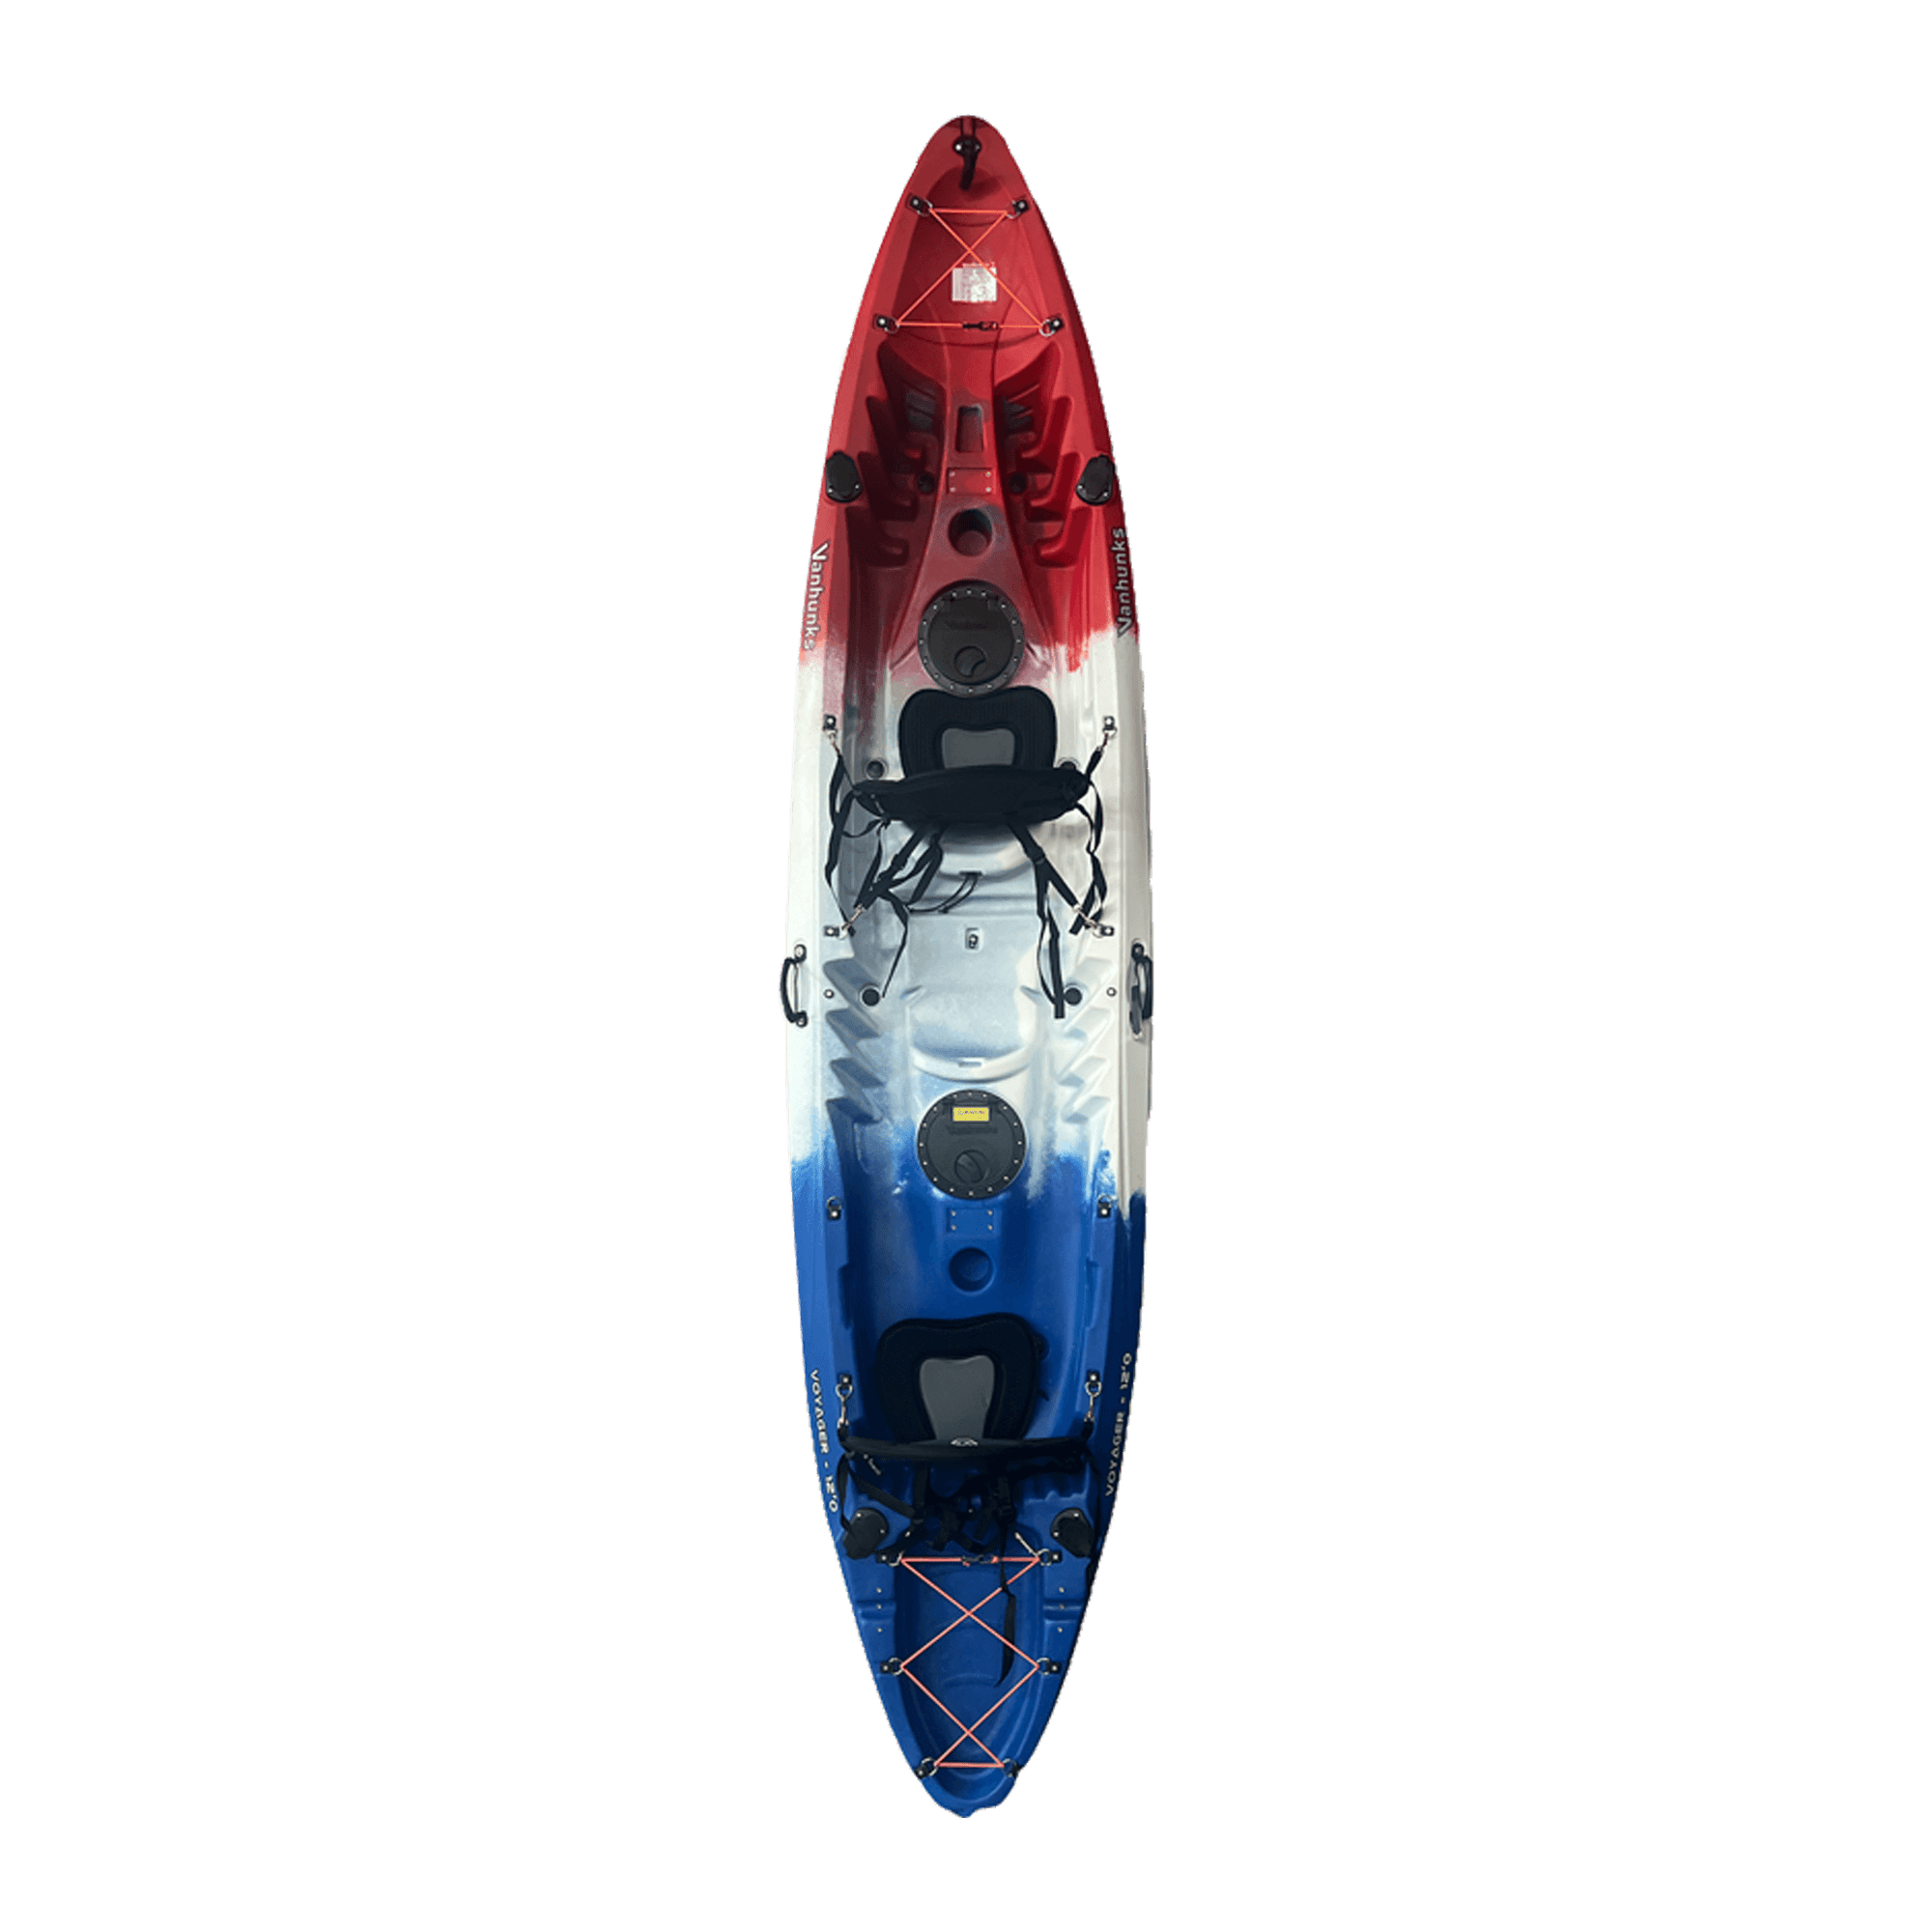 voyager kayak price